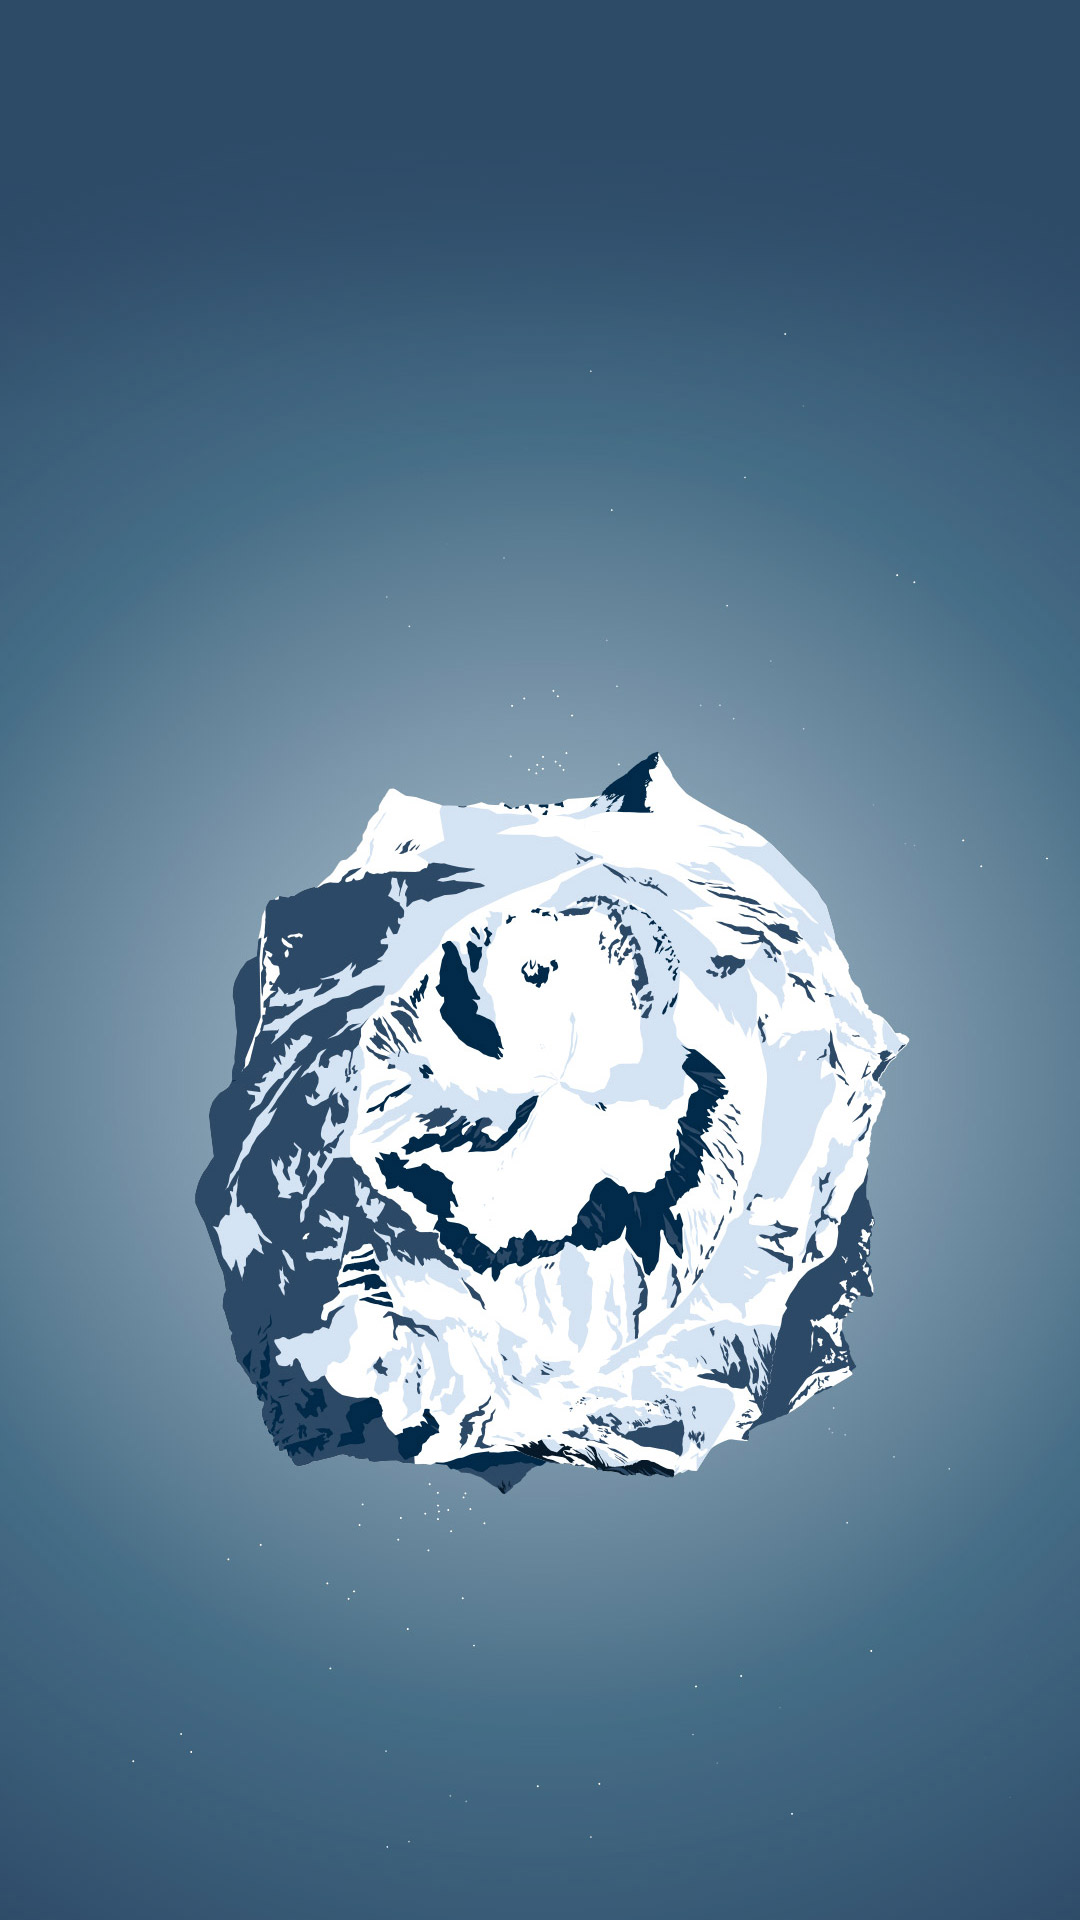 스마트 폰 라이브 배경 화면,물,빙,삽화,다이아몬드